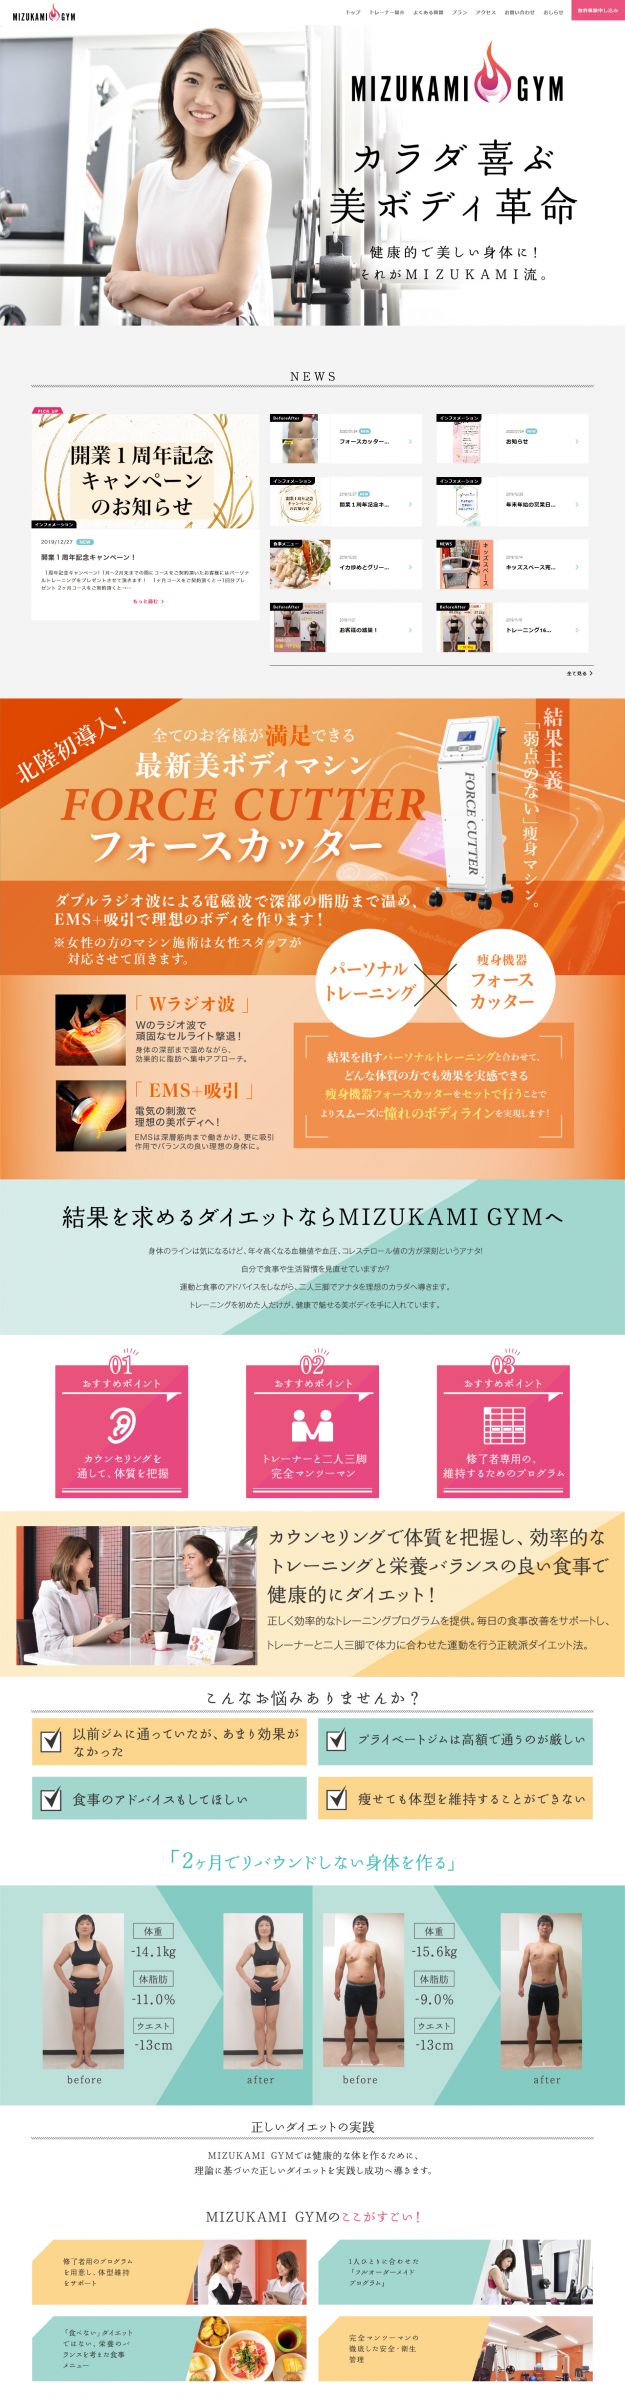 Web Site @ MIZUKAMI GYM 様 / キャストエージェンシー 実績紹介